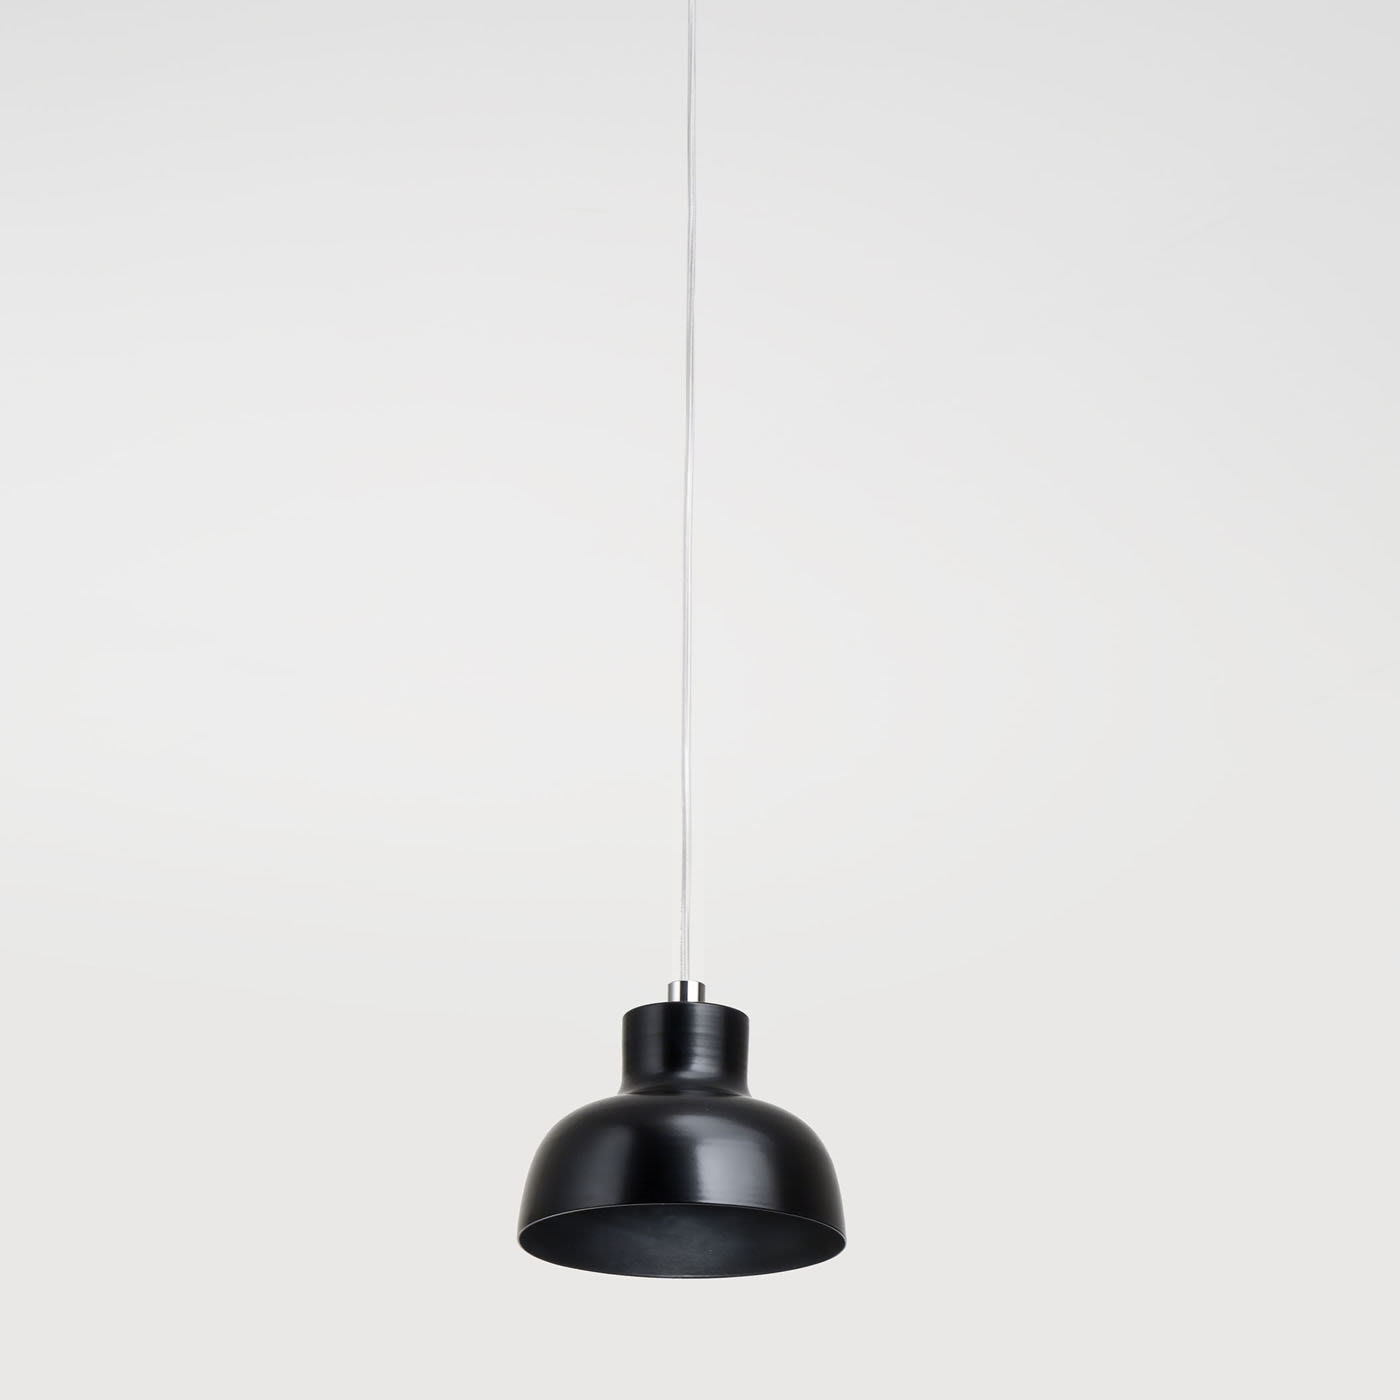 Coco 1 Black Pendant Lamp by Franco Zavarise - Zava Luce